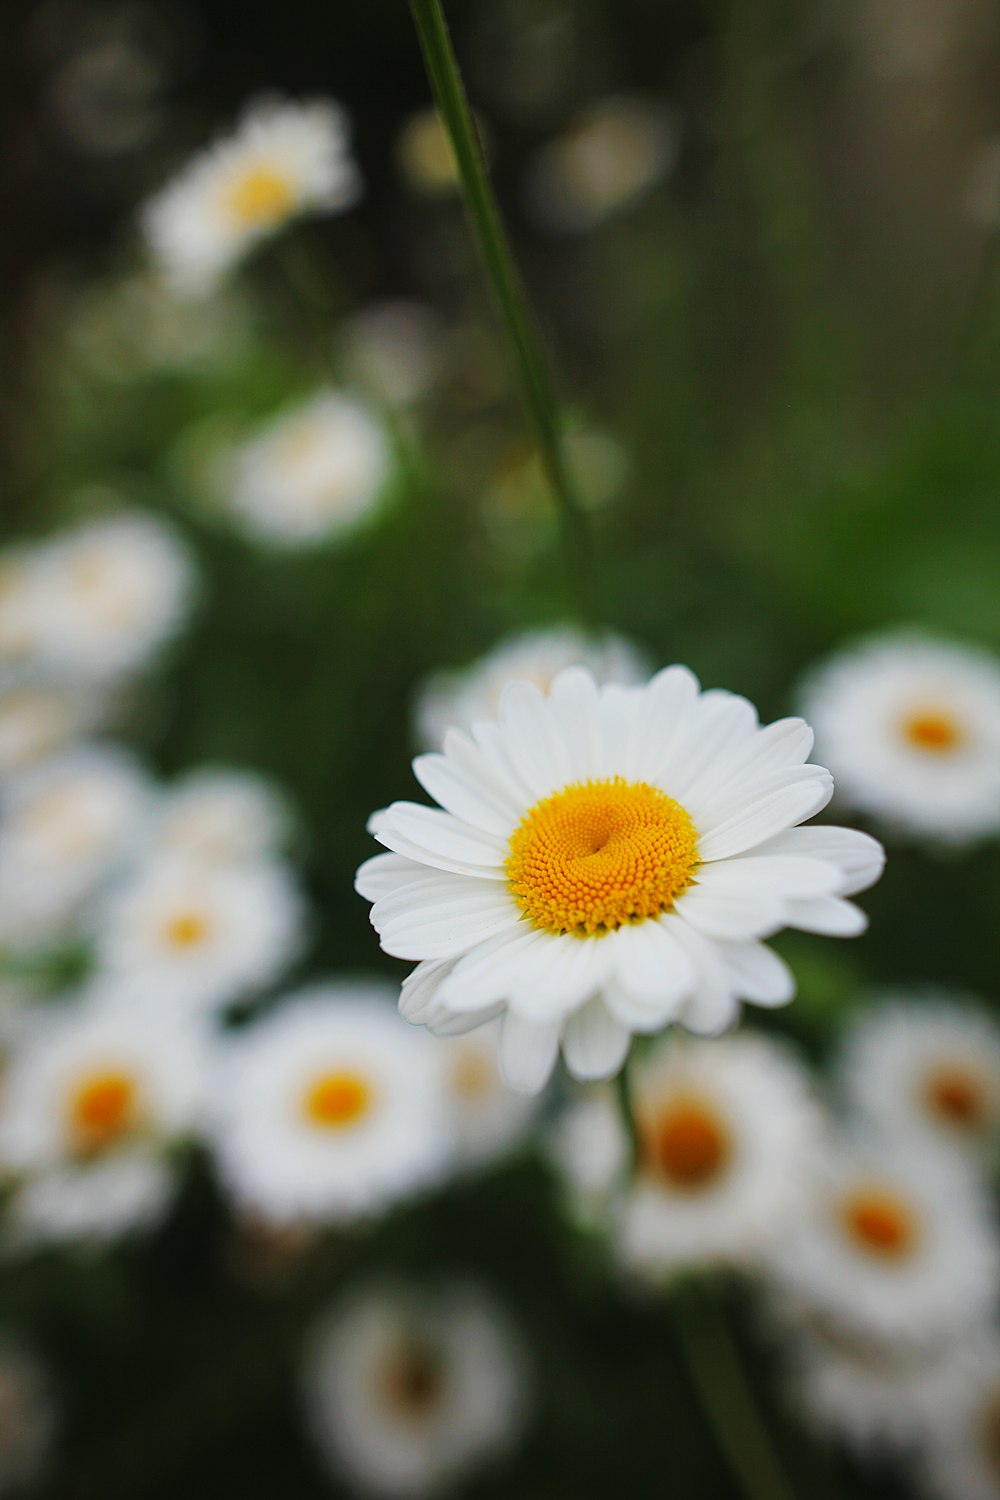 Un primer plano de una flor blanca con centro amarillo